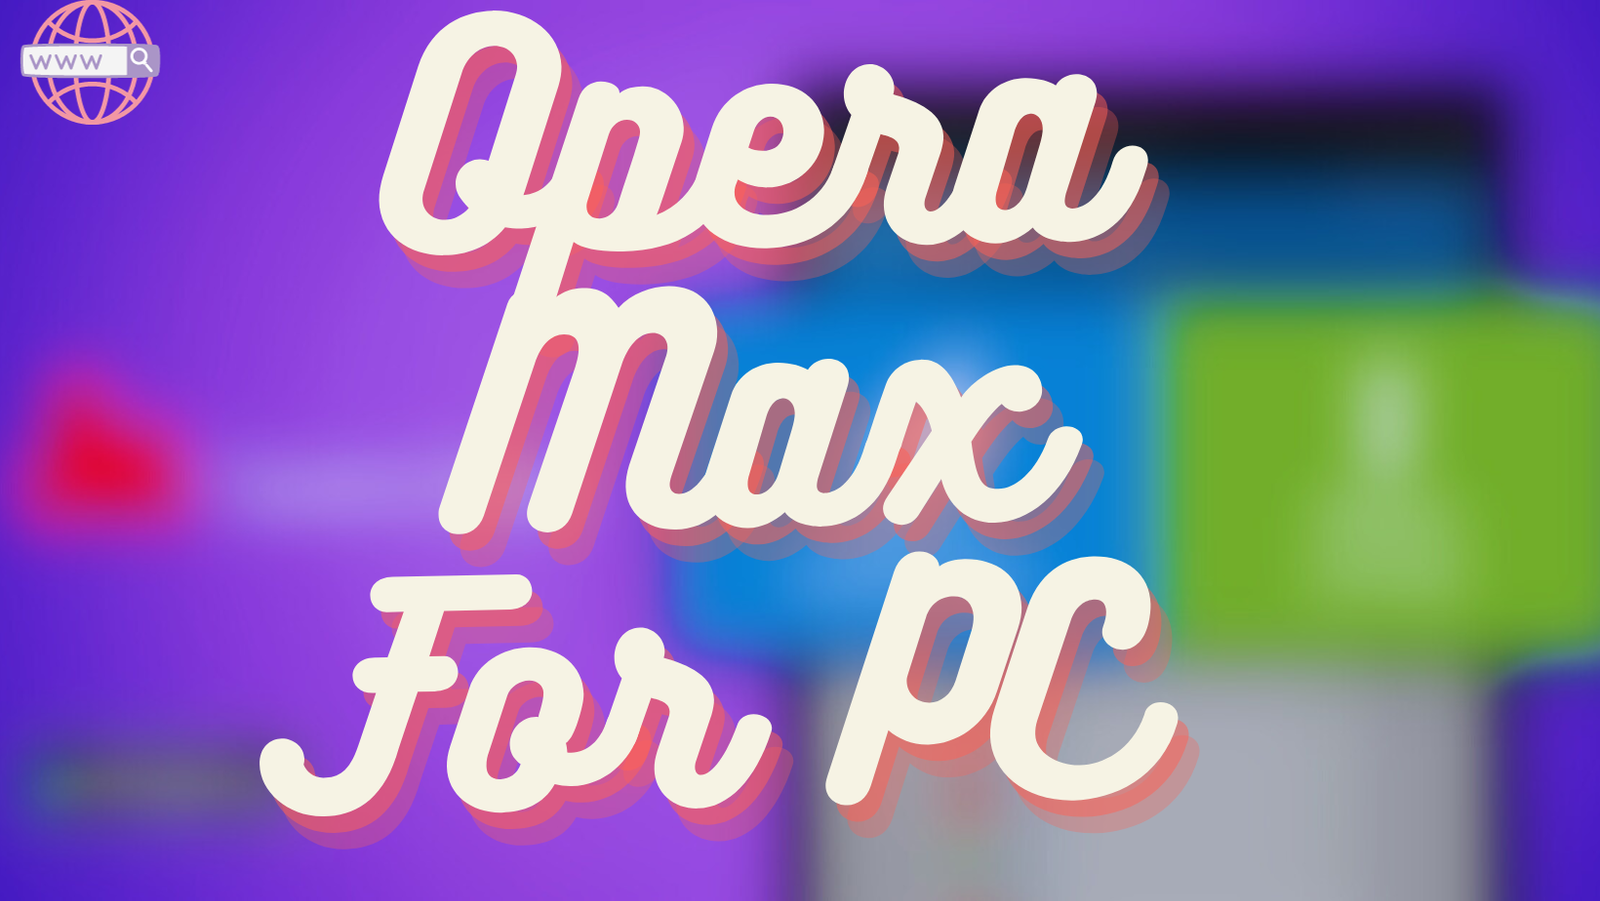 Opera Max For PC